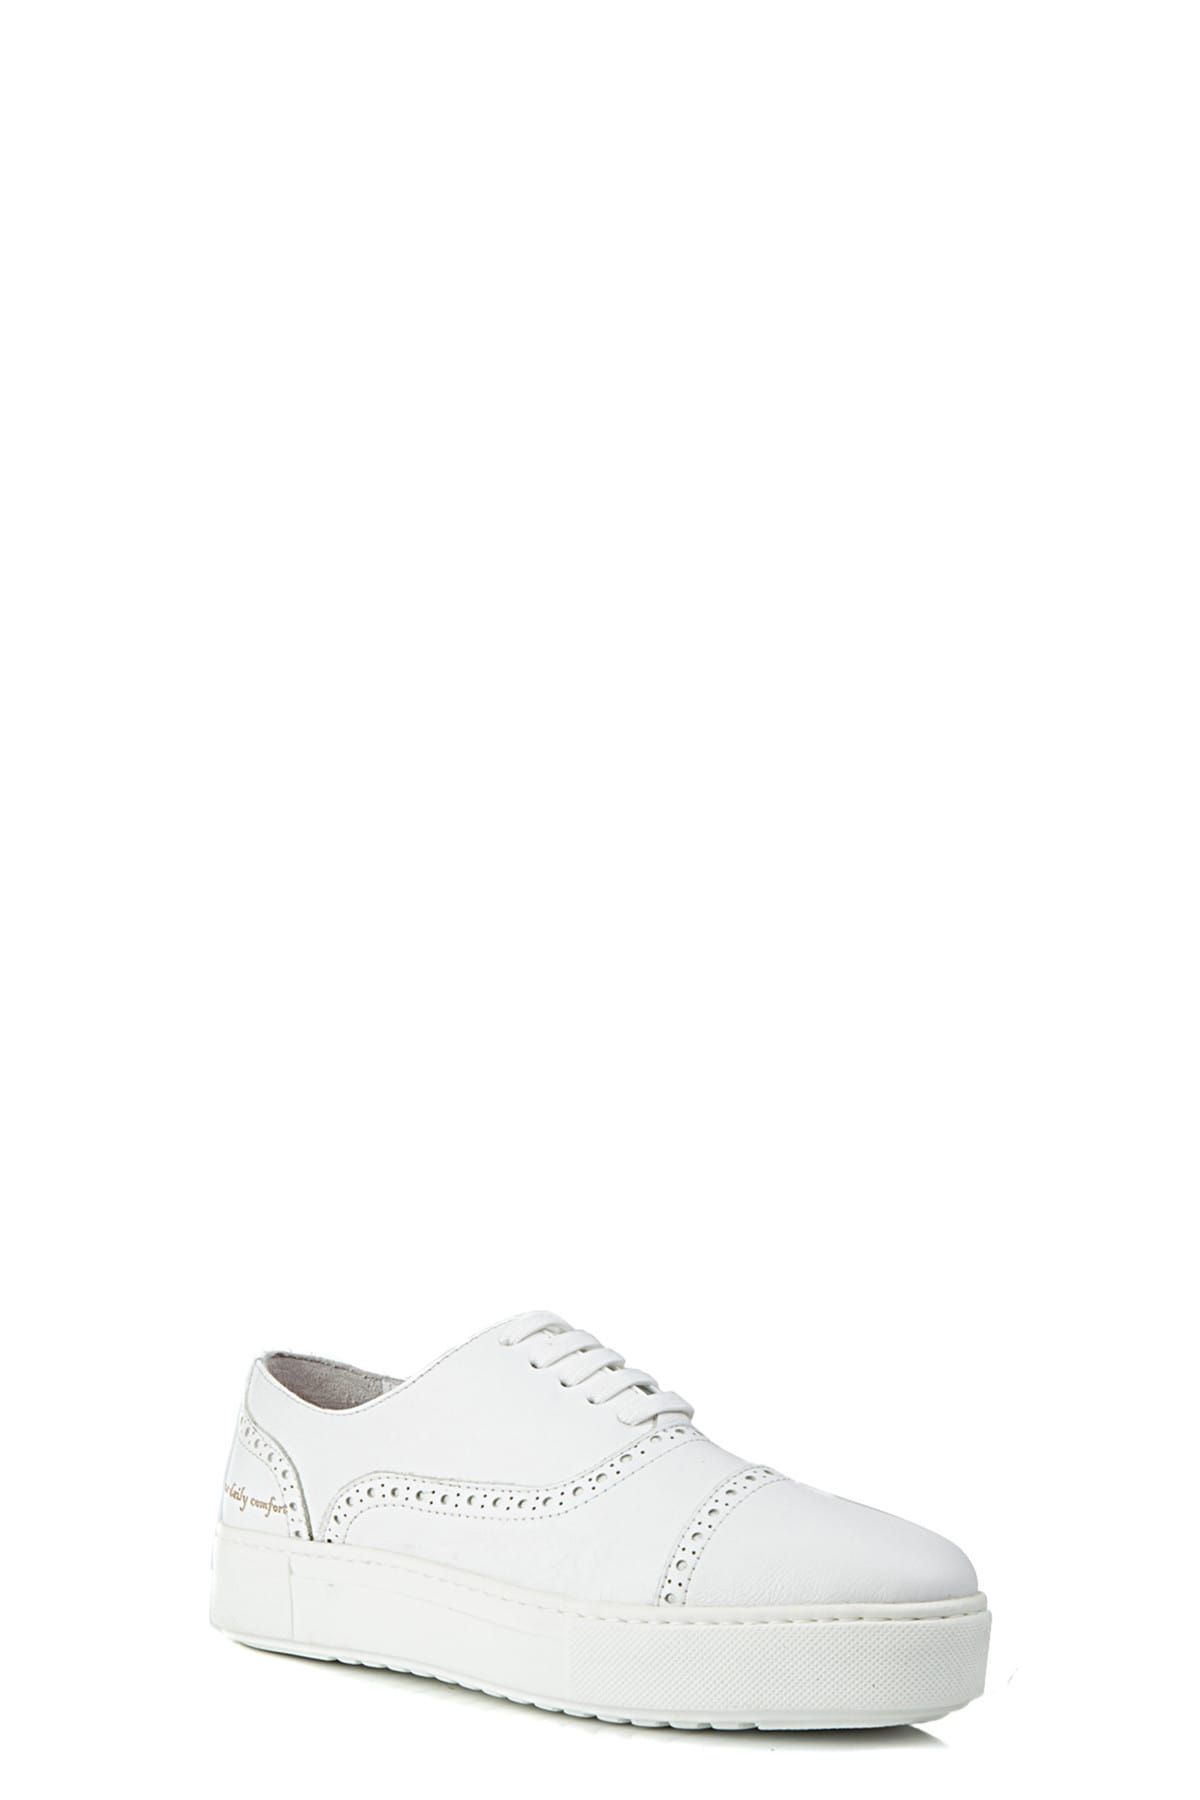 D'S Damat Erkek Deri Beyaz Klasik Ayakkabı - 0Hc093129005_801